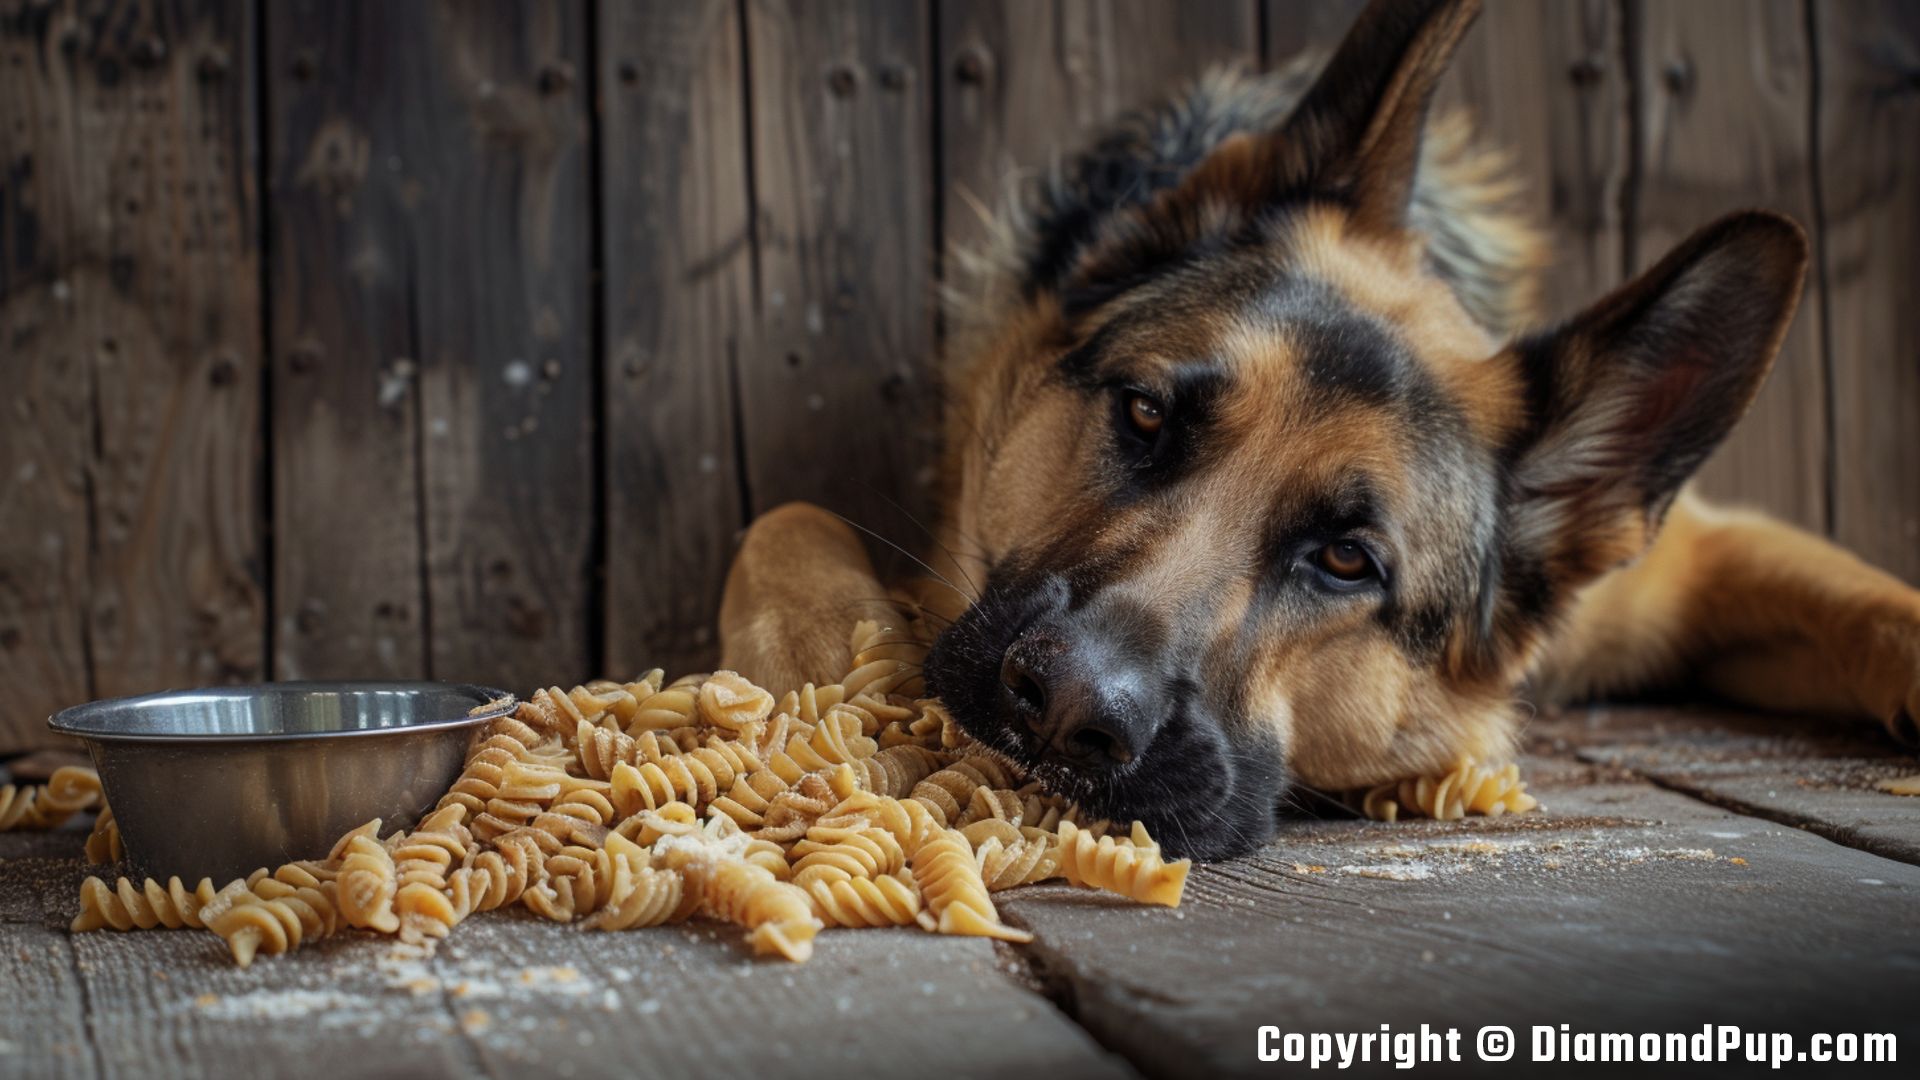 Image of a Cute German Shepherd Eating Pasta